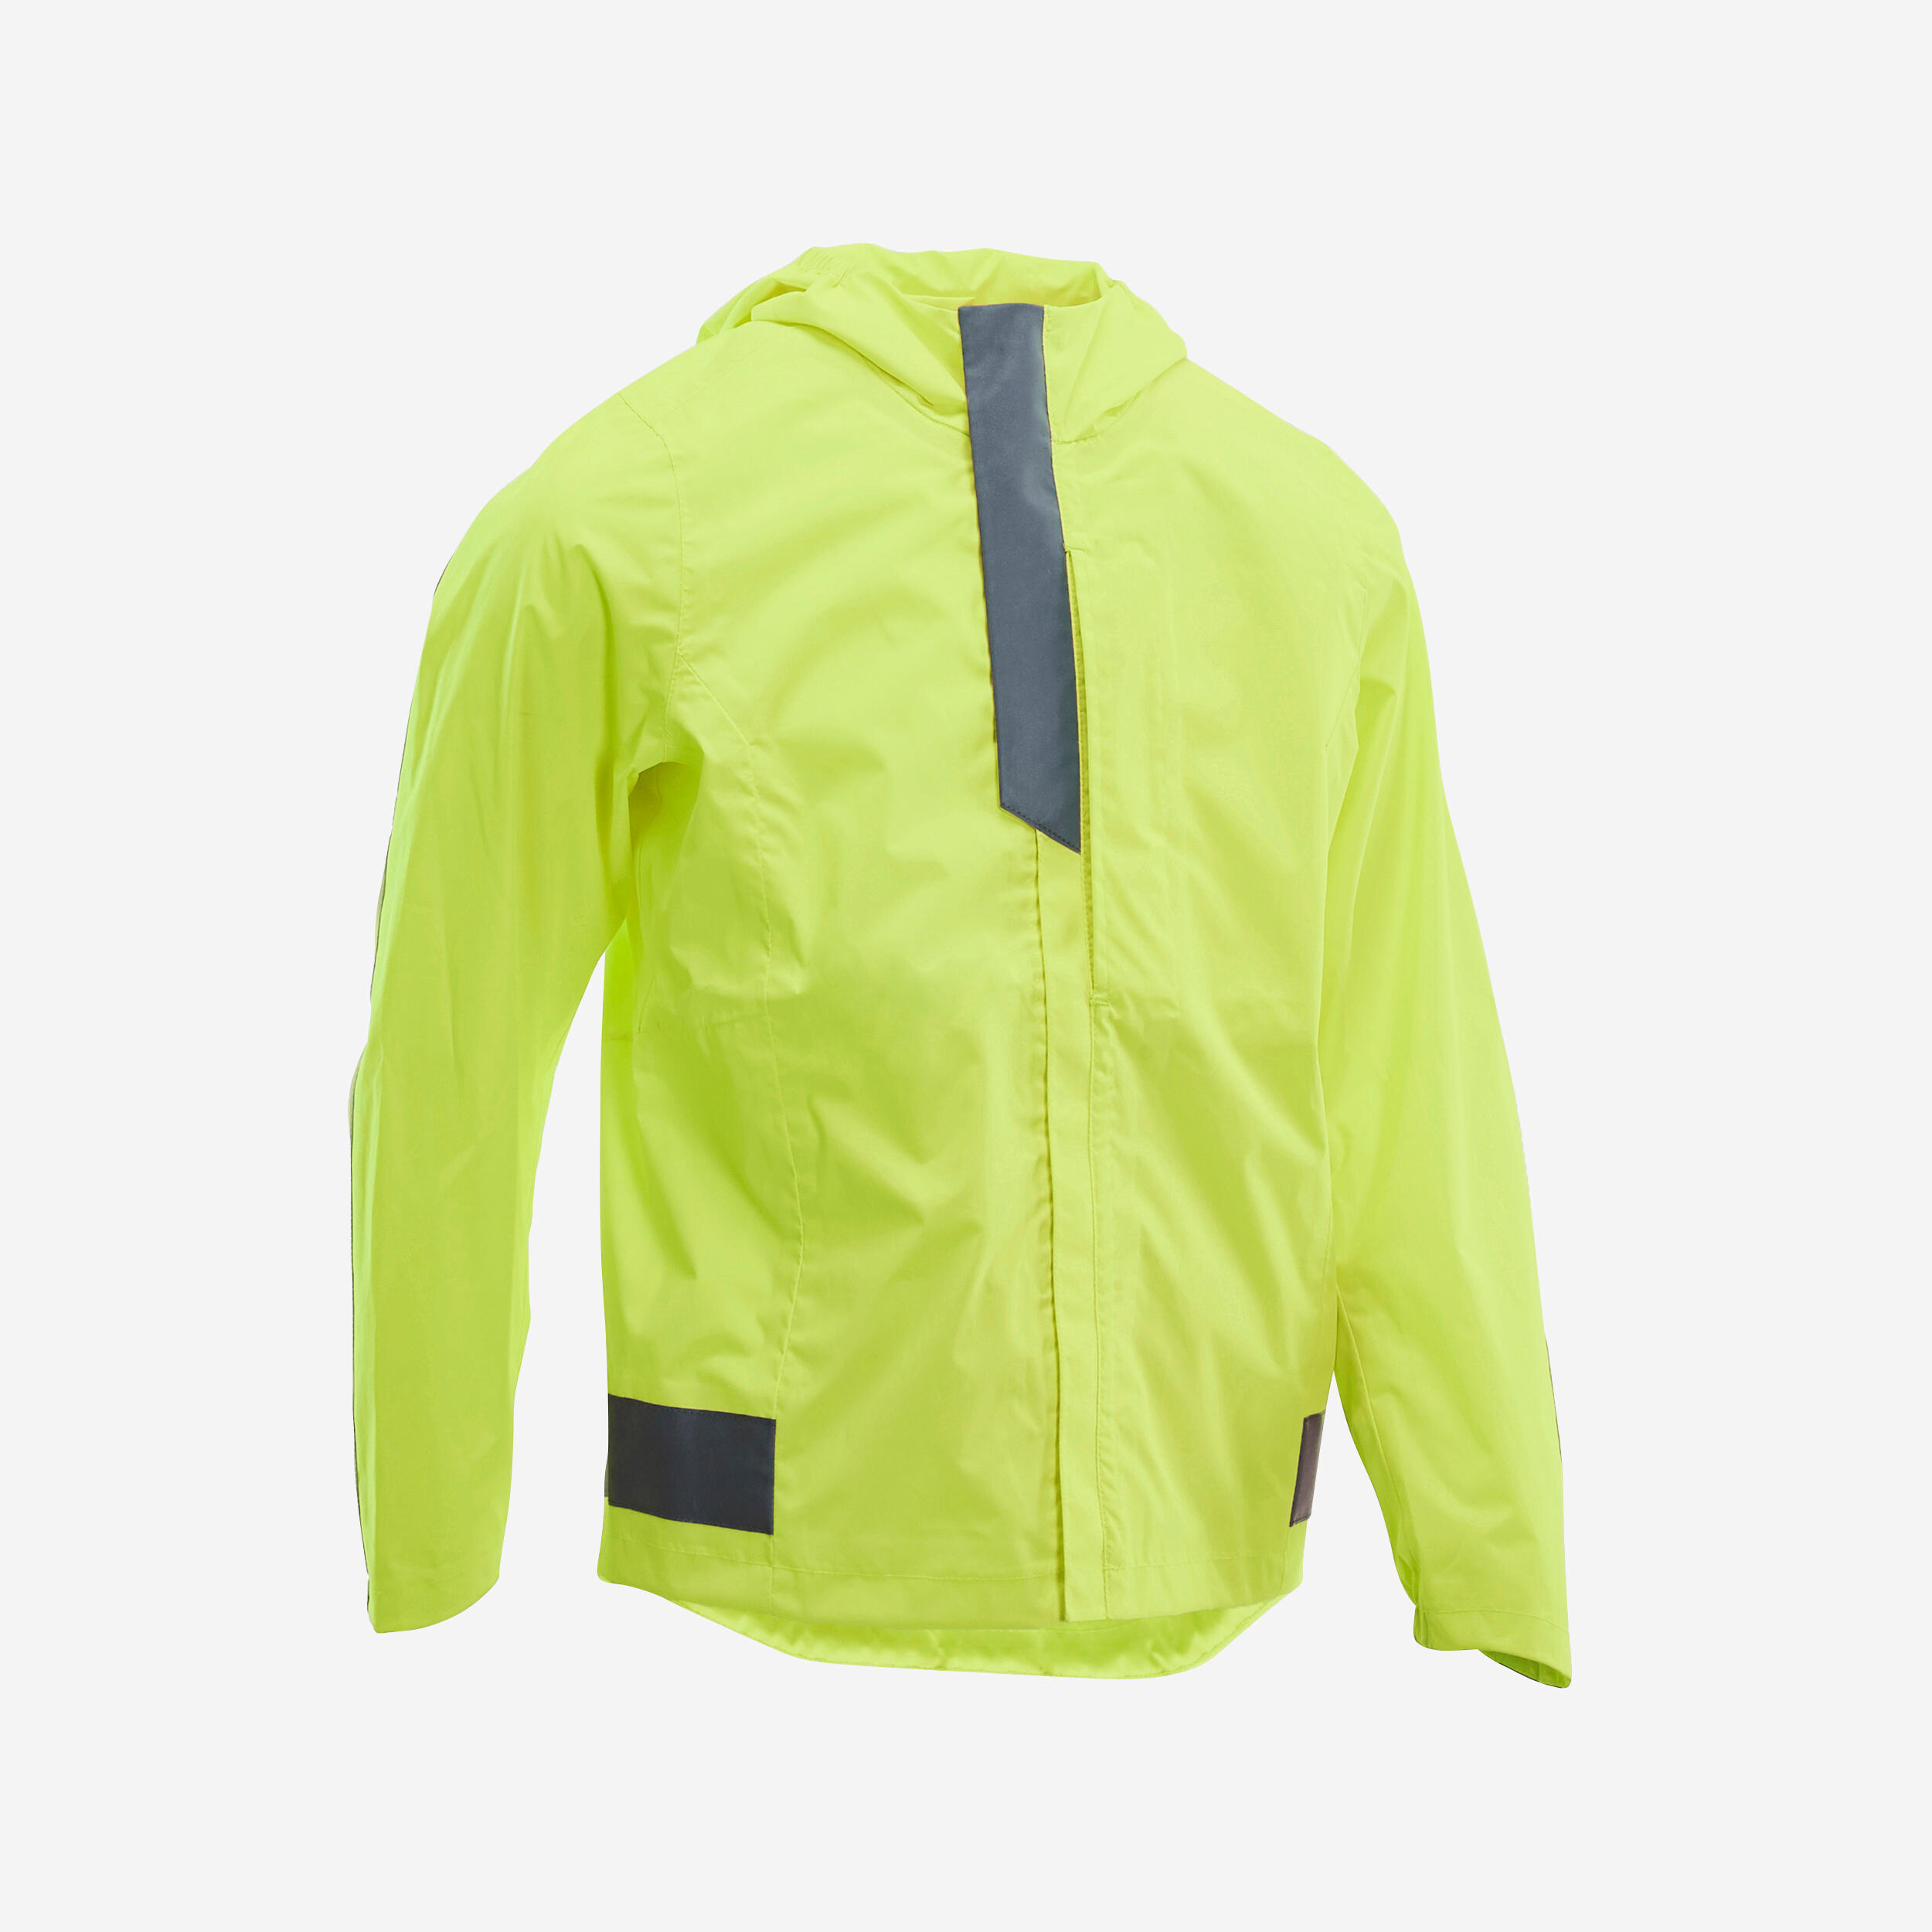 reflective jacket decathlon